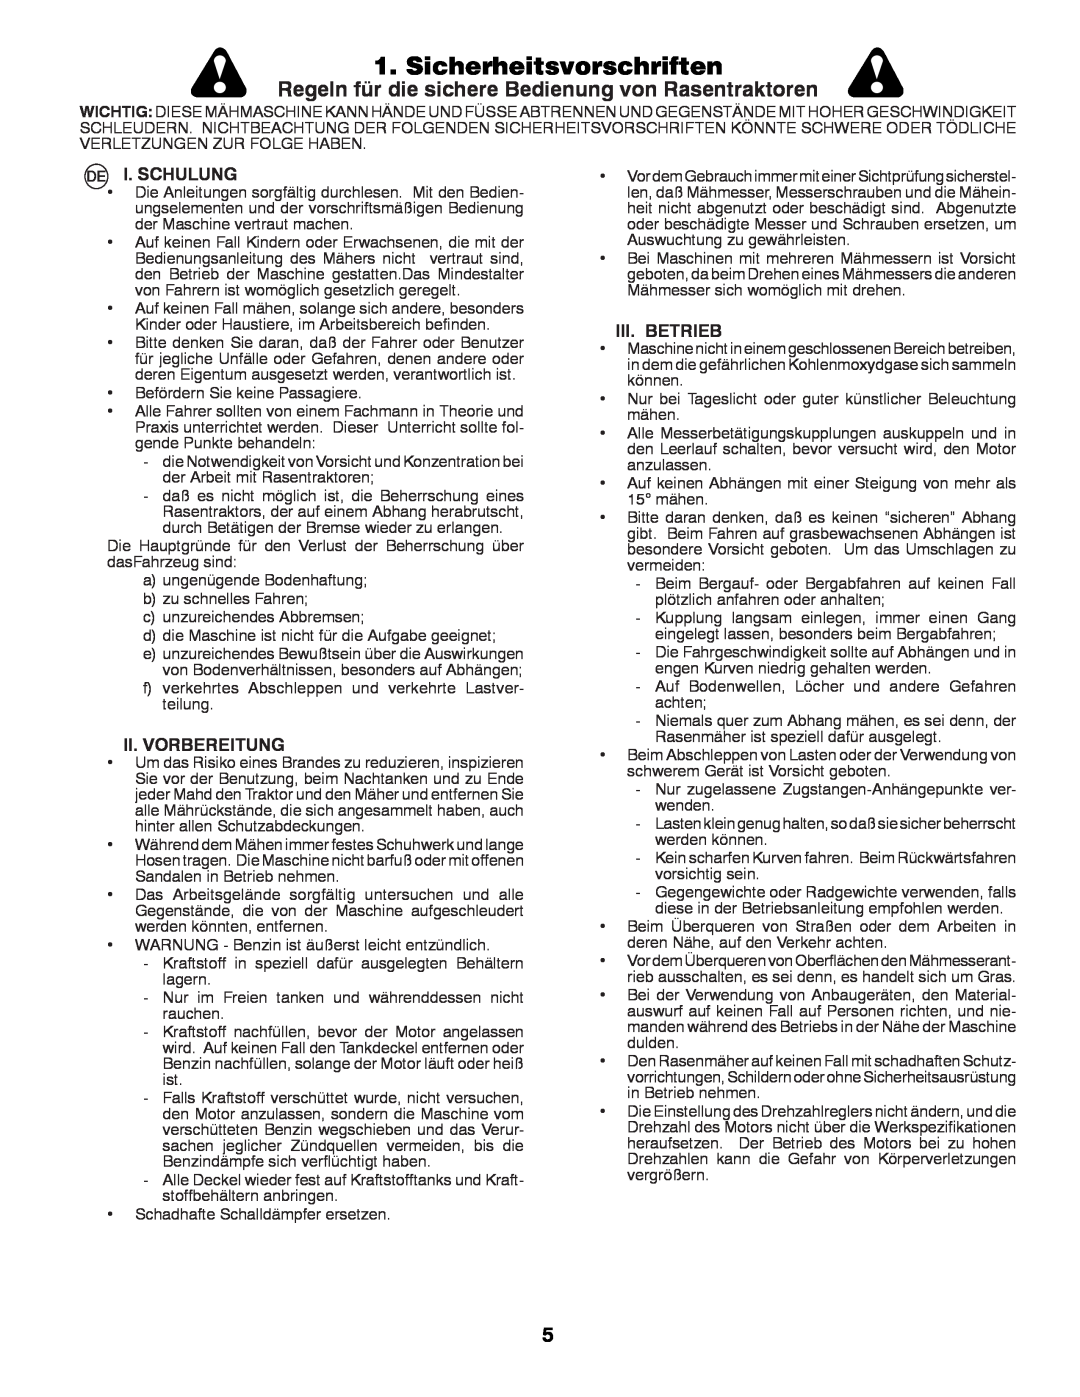 Partner Tech P200107HRB Sicherheitsvorschriften, Regeln für die sichere Bedienung von Rasentraktoren, I. Schulung 